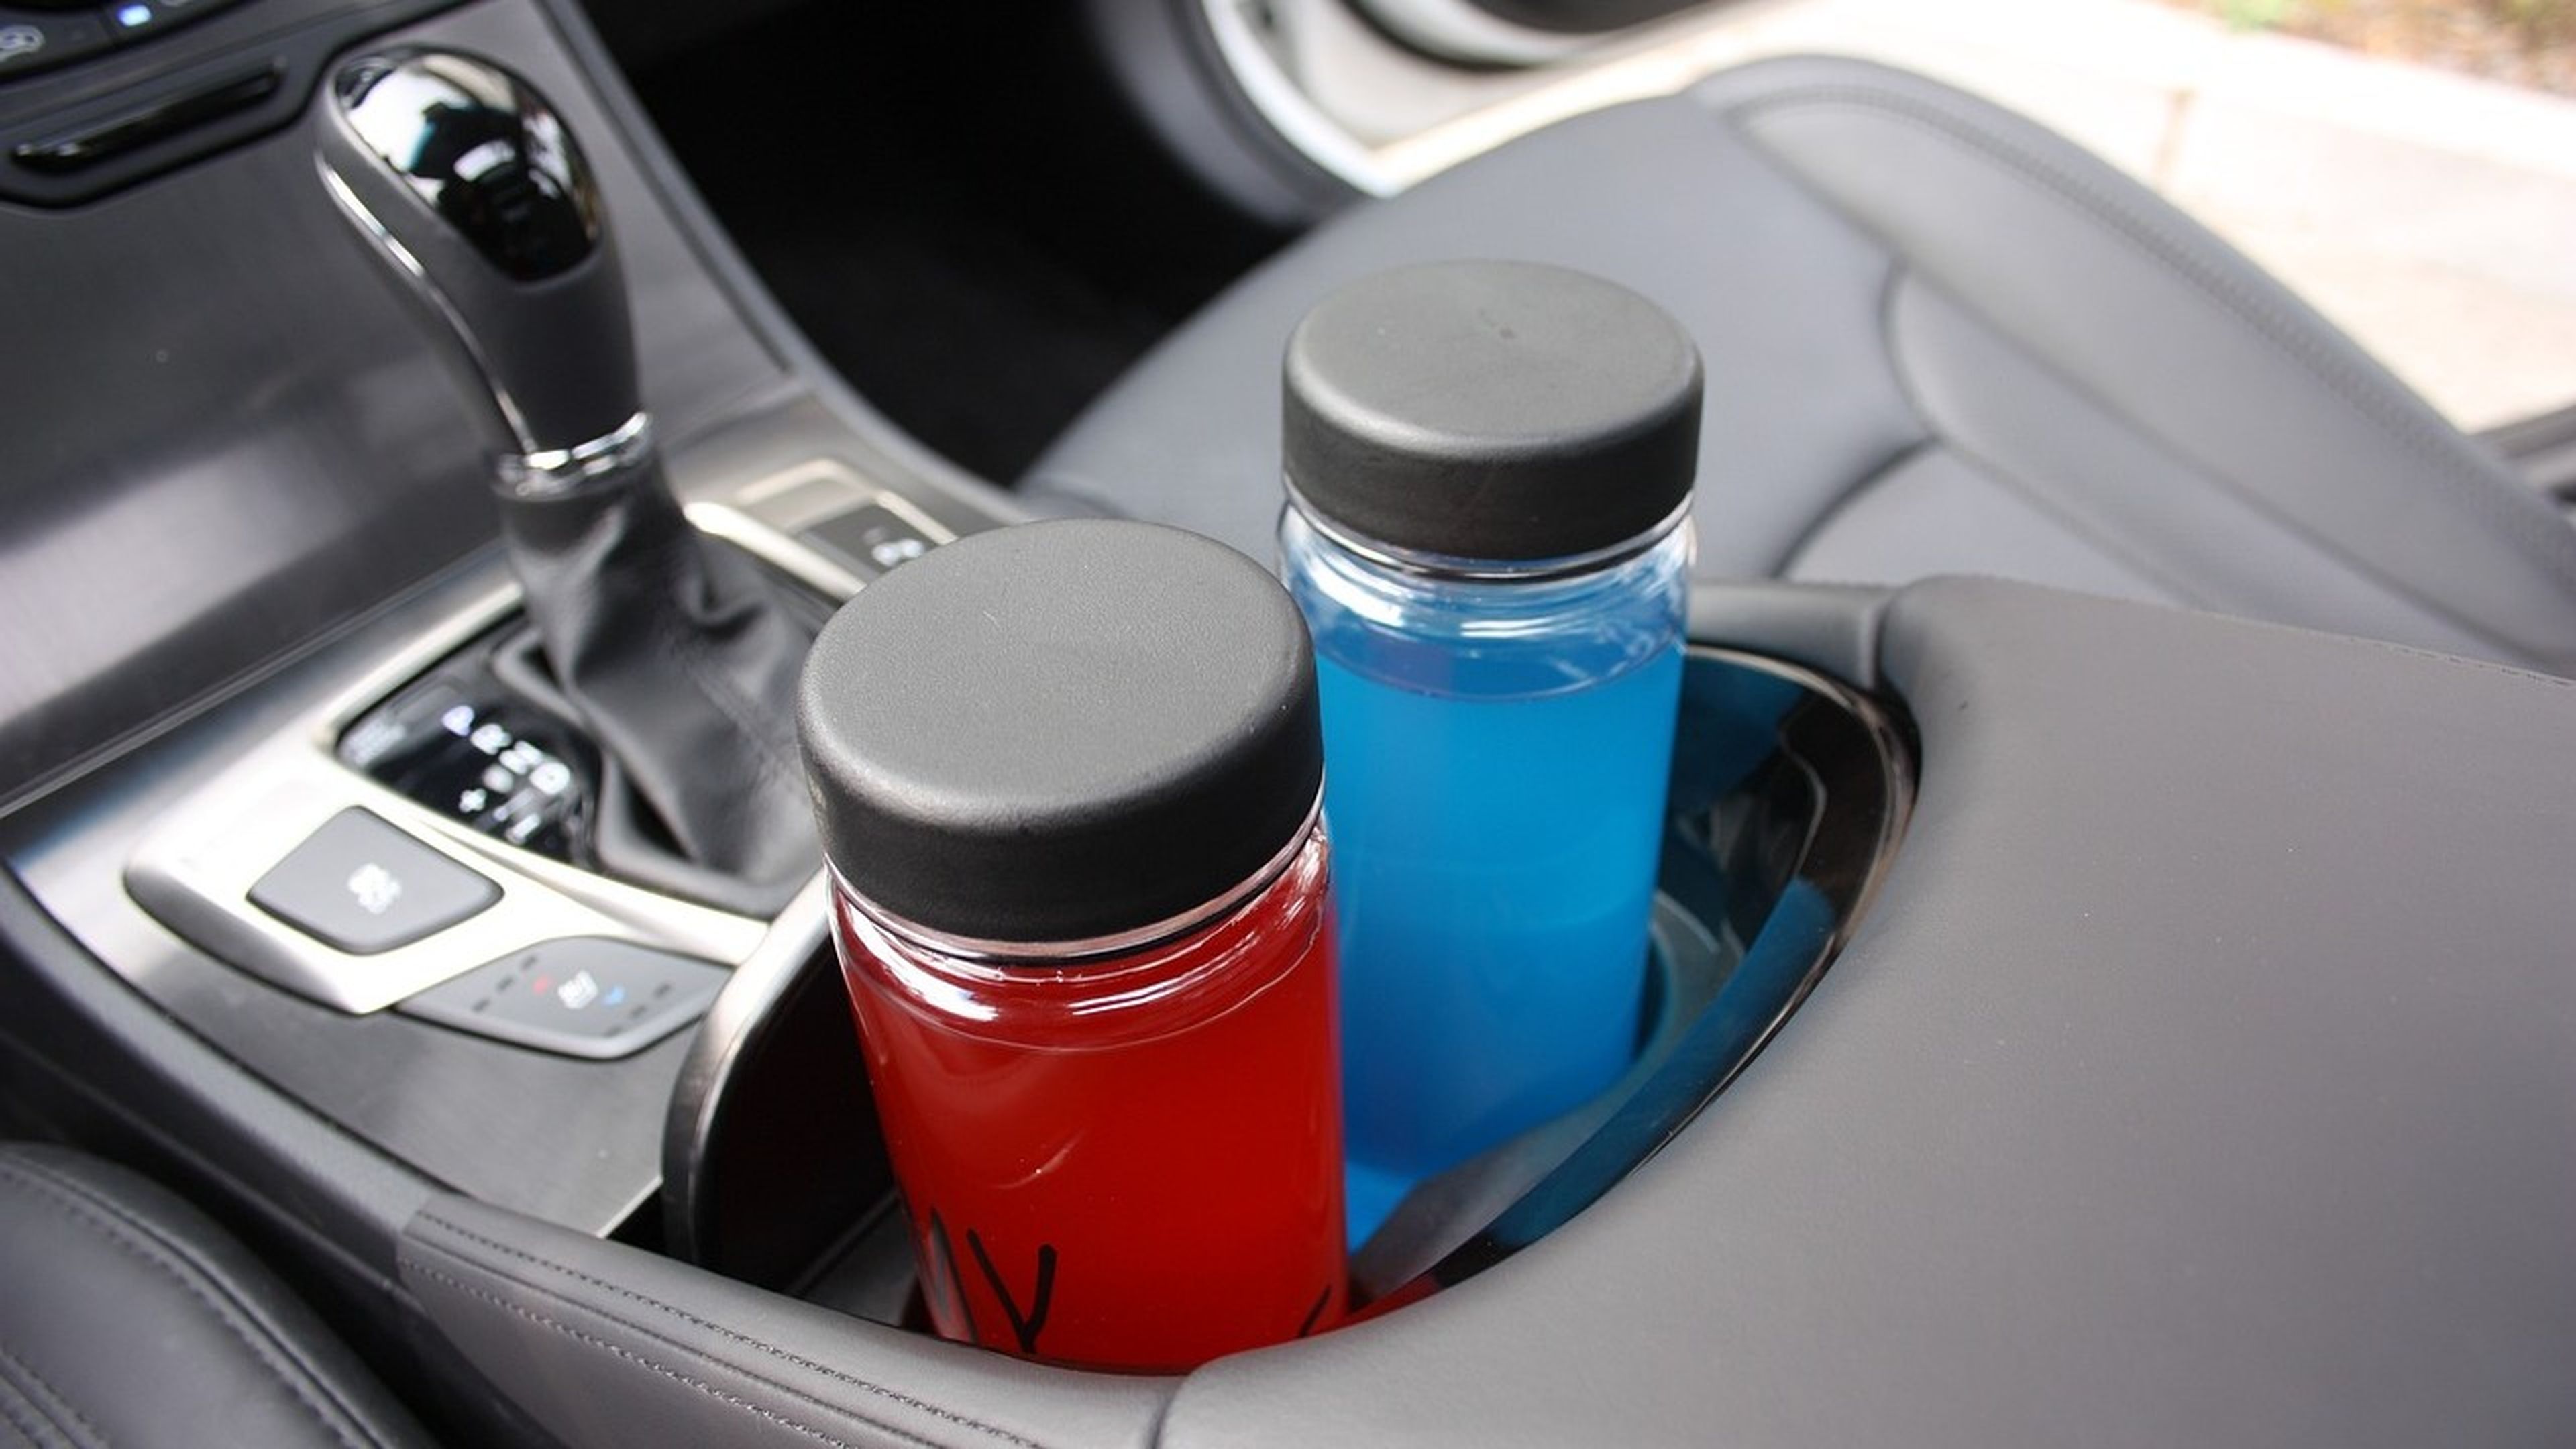 No debes dejar bebidas carbonatadas en el coche